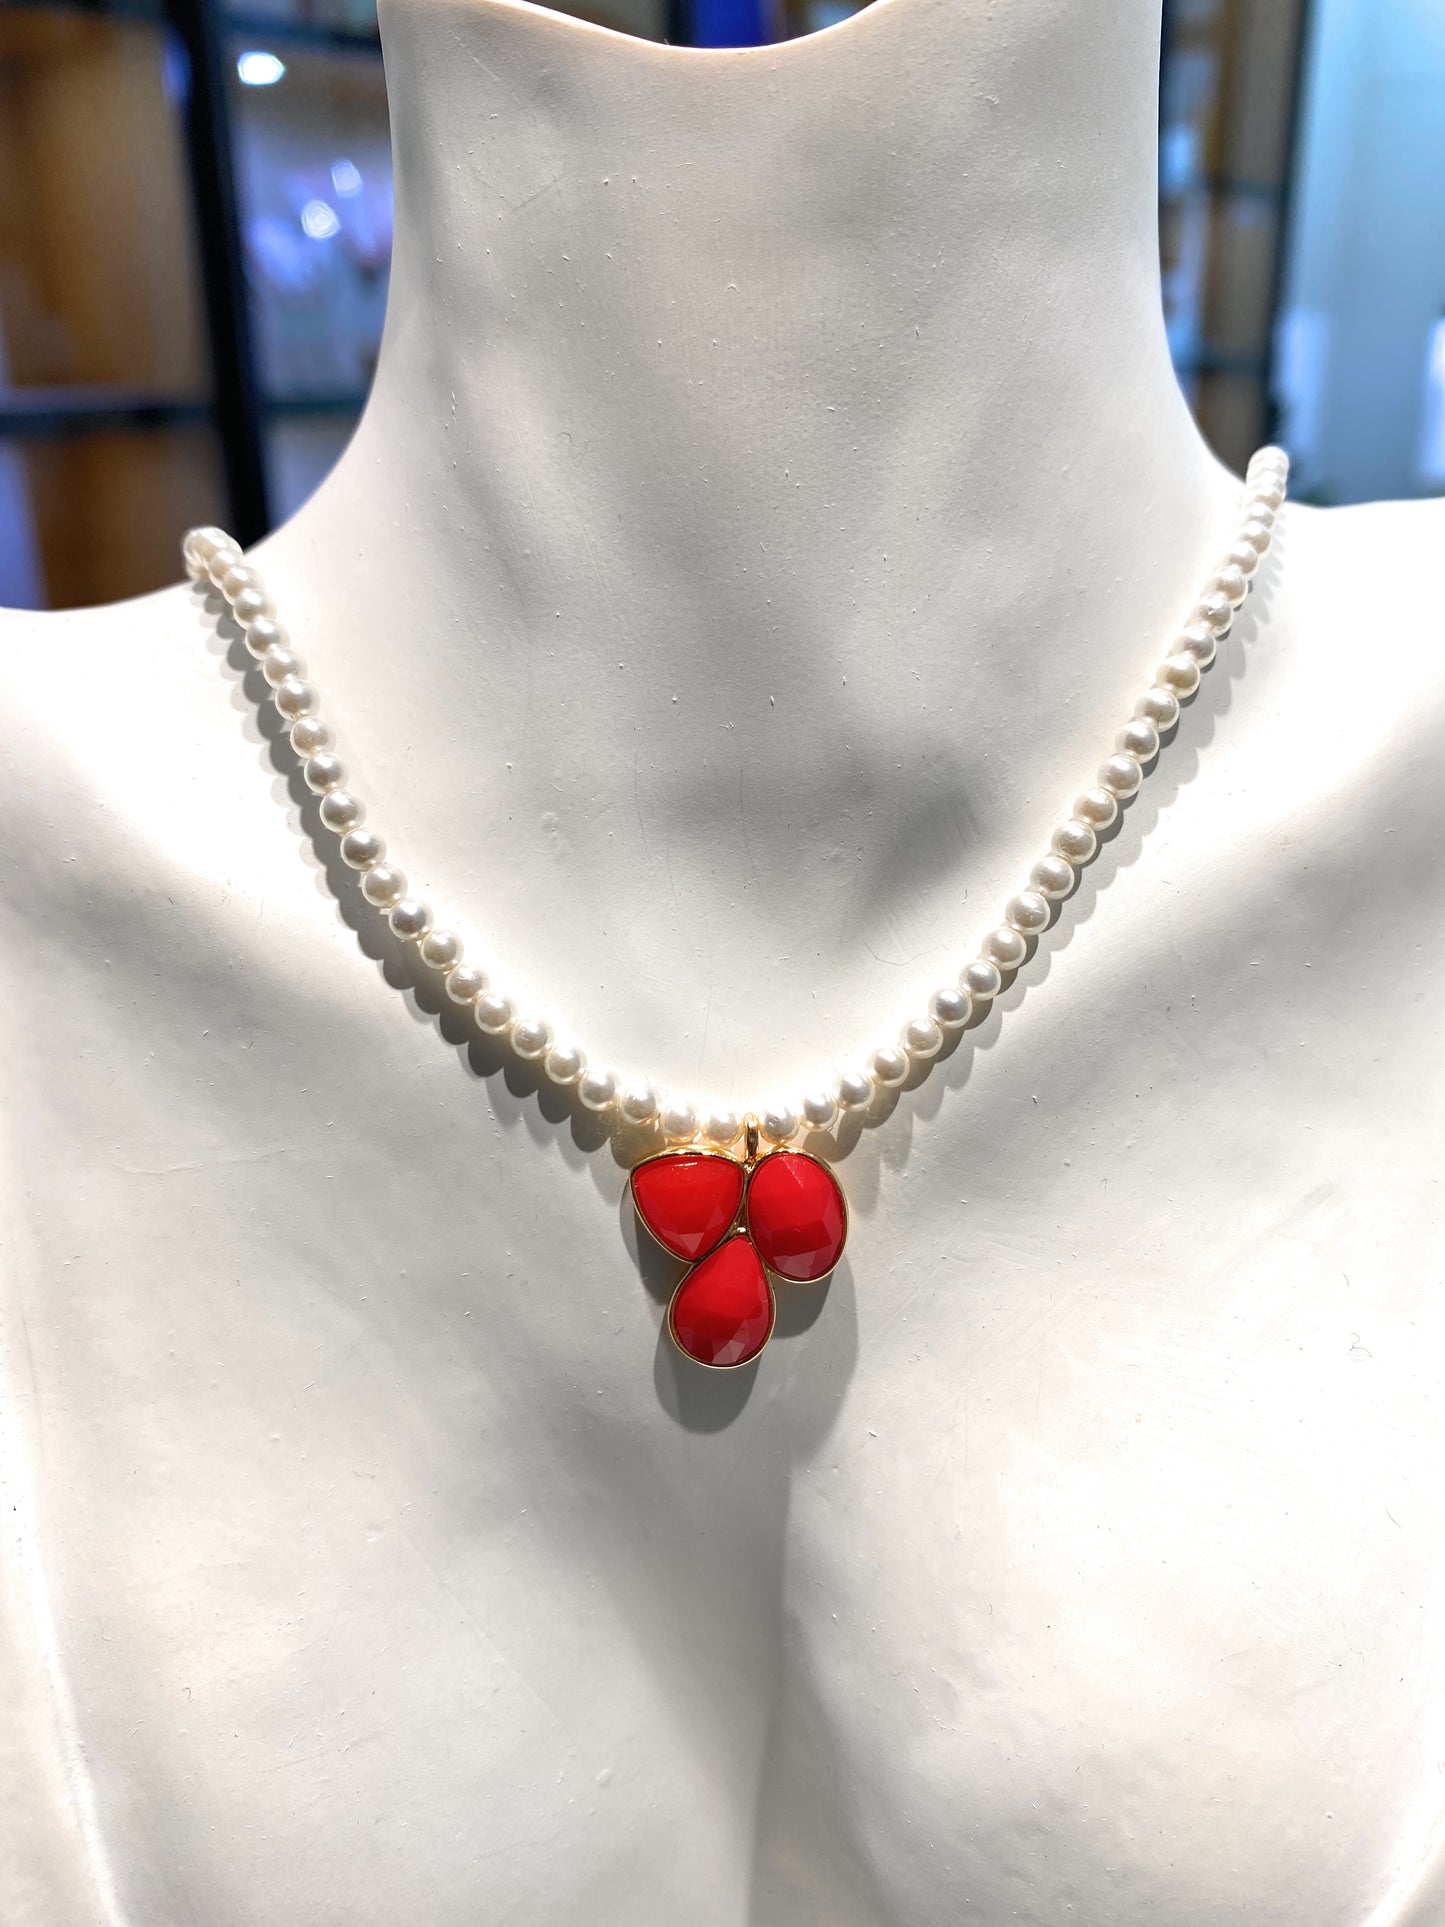 Collarino tipo choker perle mm 3 pendente personalizzabile